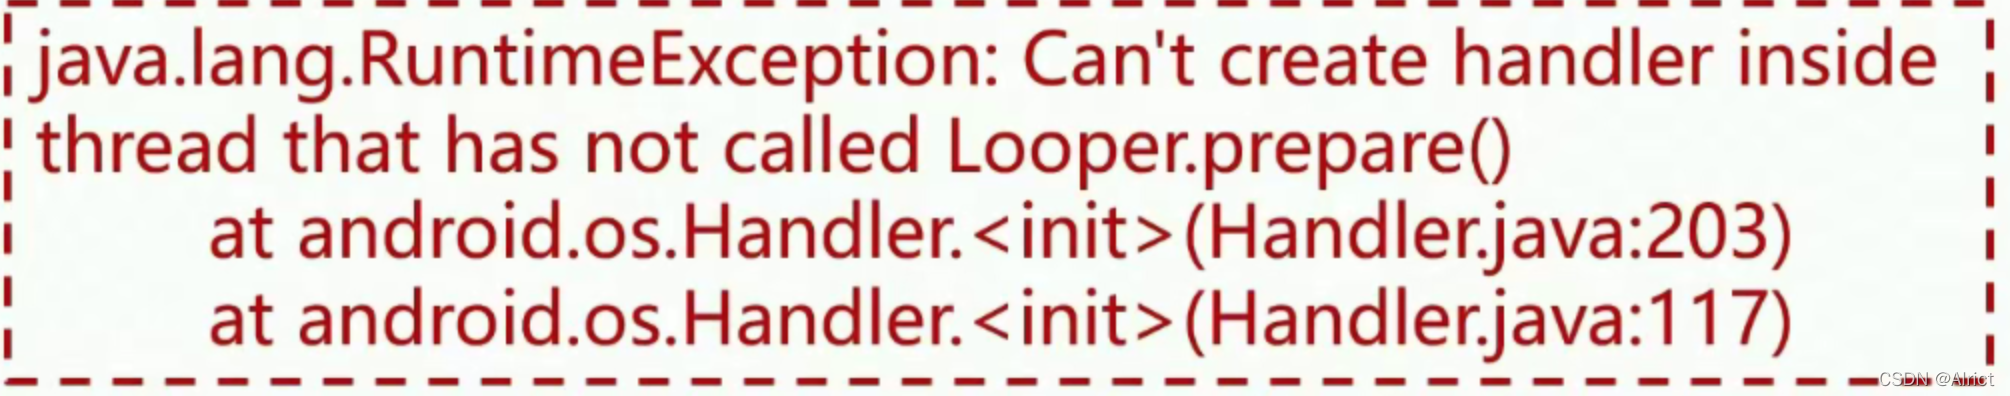 在子线程内不能直接创建Handler，创建之前需要调用Looper.prepare()